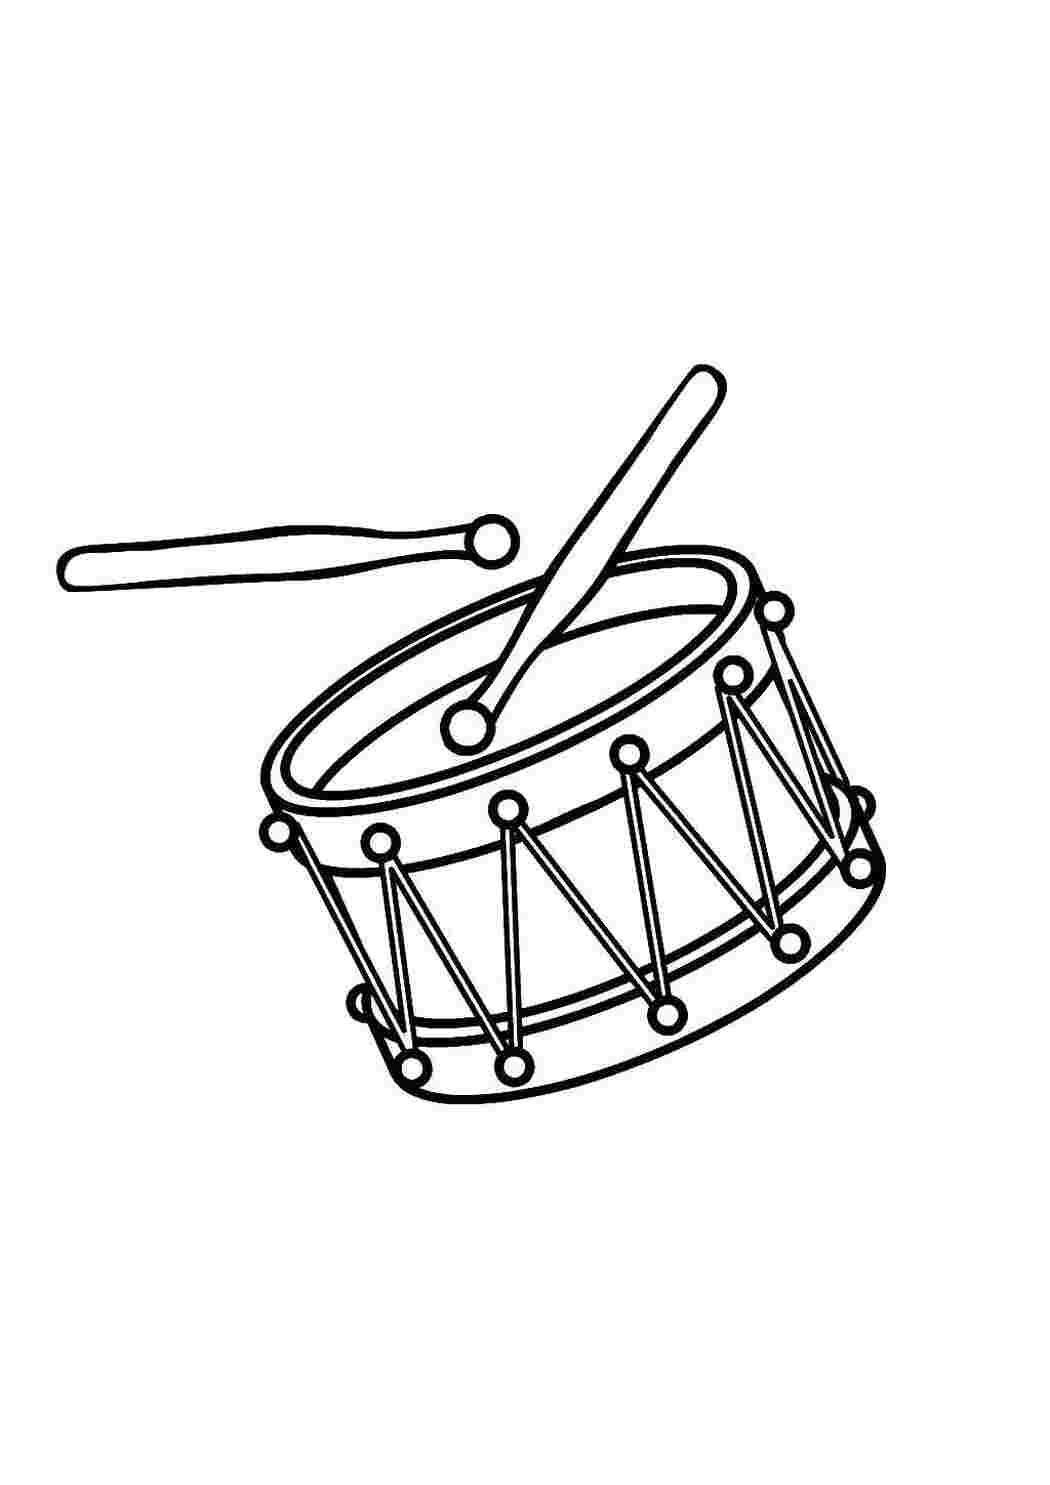 Раскраски Барабан и барабанные палочки Музыкальный инструмент Инструмент, барабан